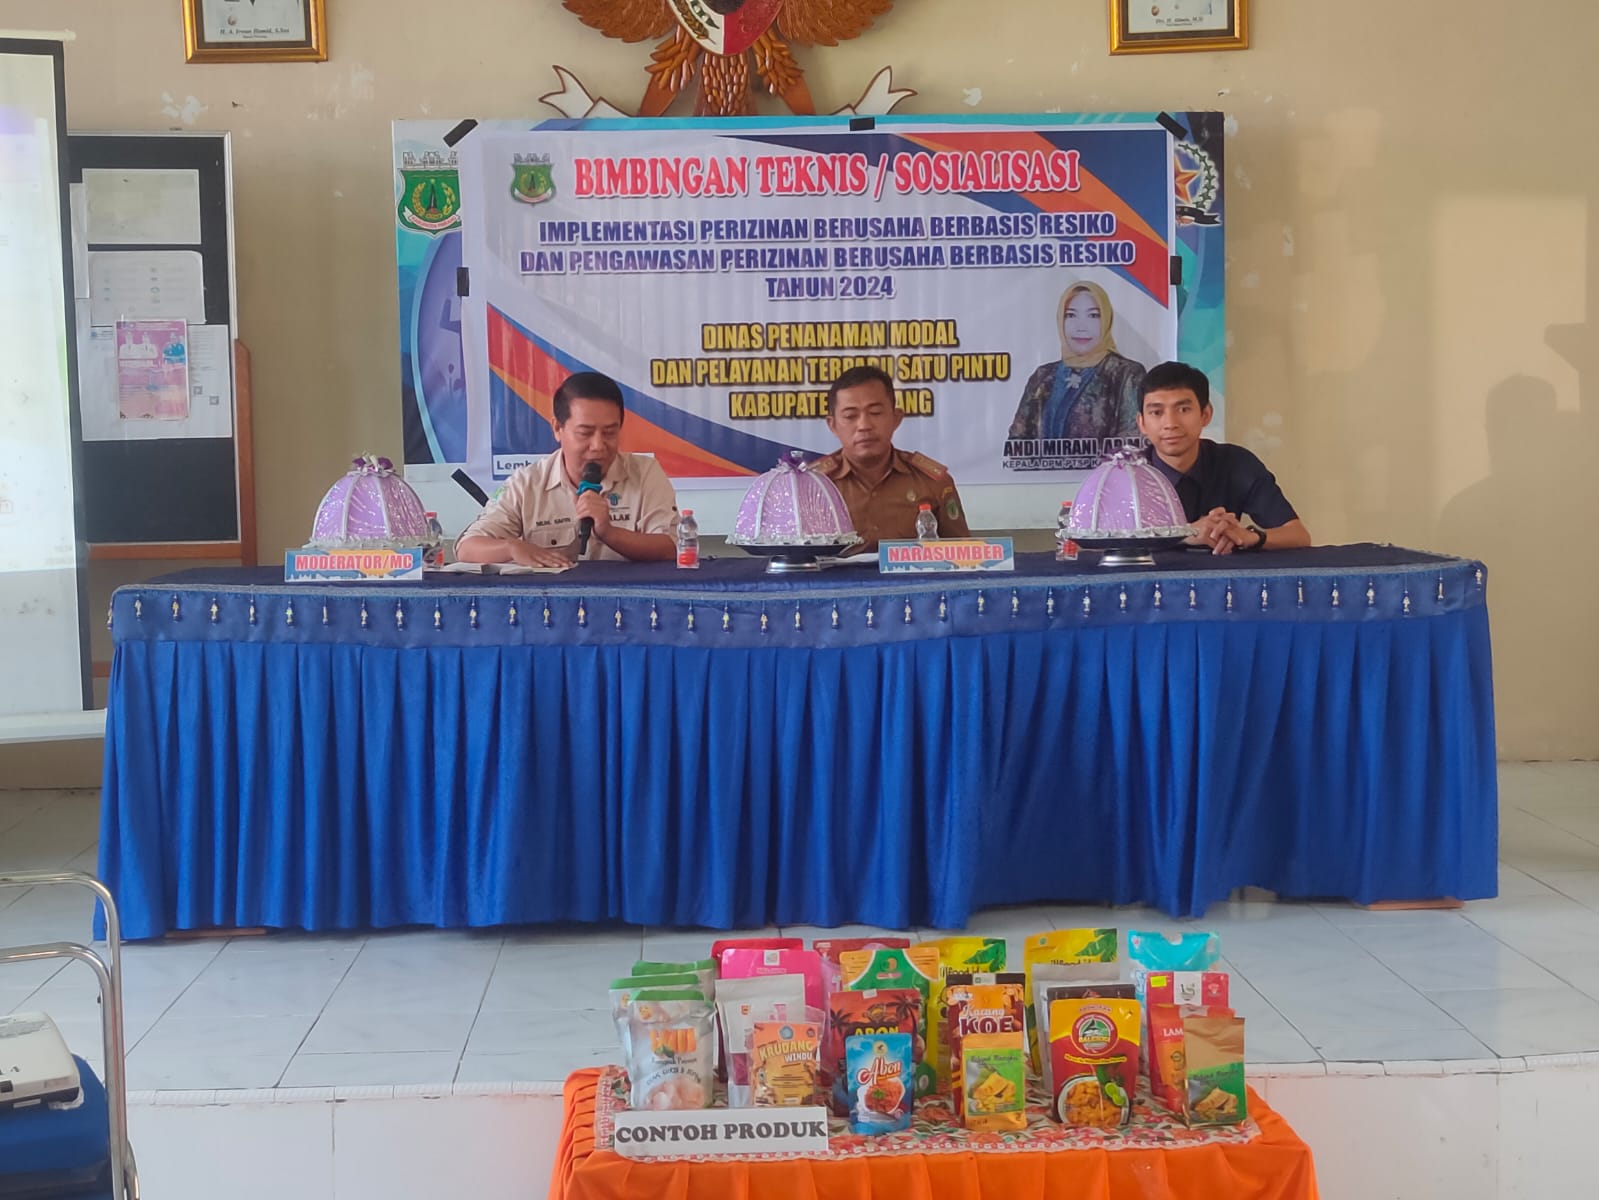 foto Bimbingan Teknis/ Sosialisasi Implementasi Serta Pengawasan Perizinan Berusaha Berbasis Resiko Di Kecamatan Lembang